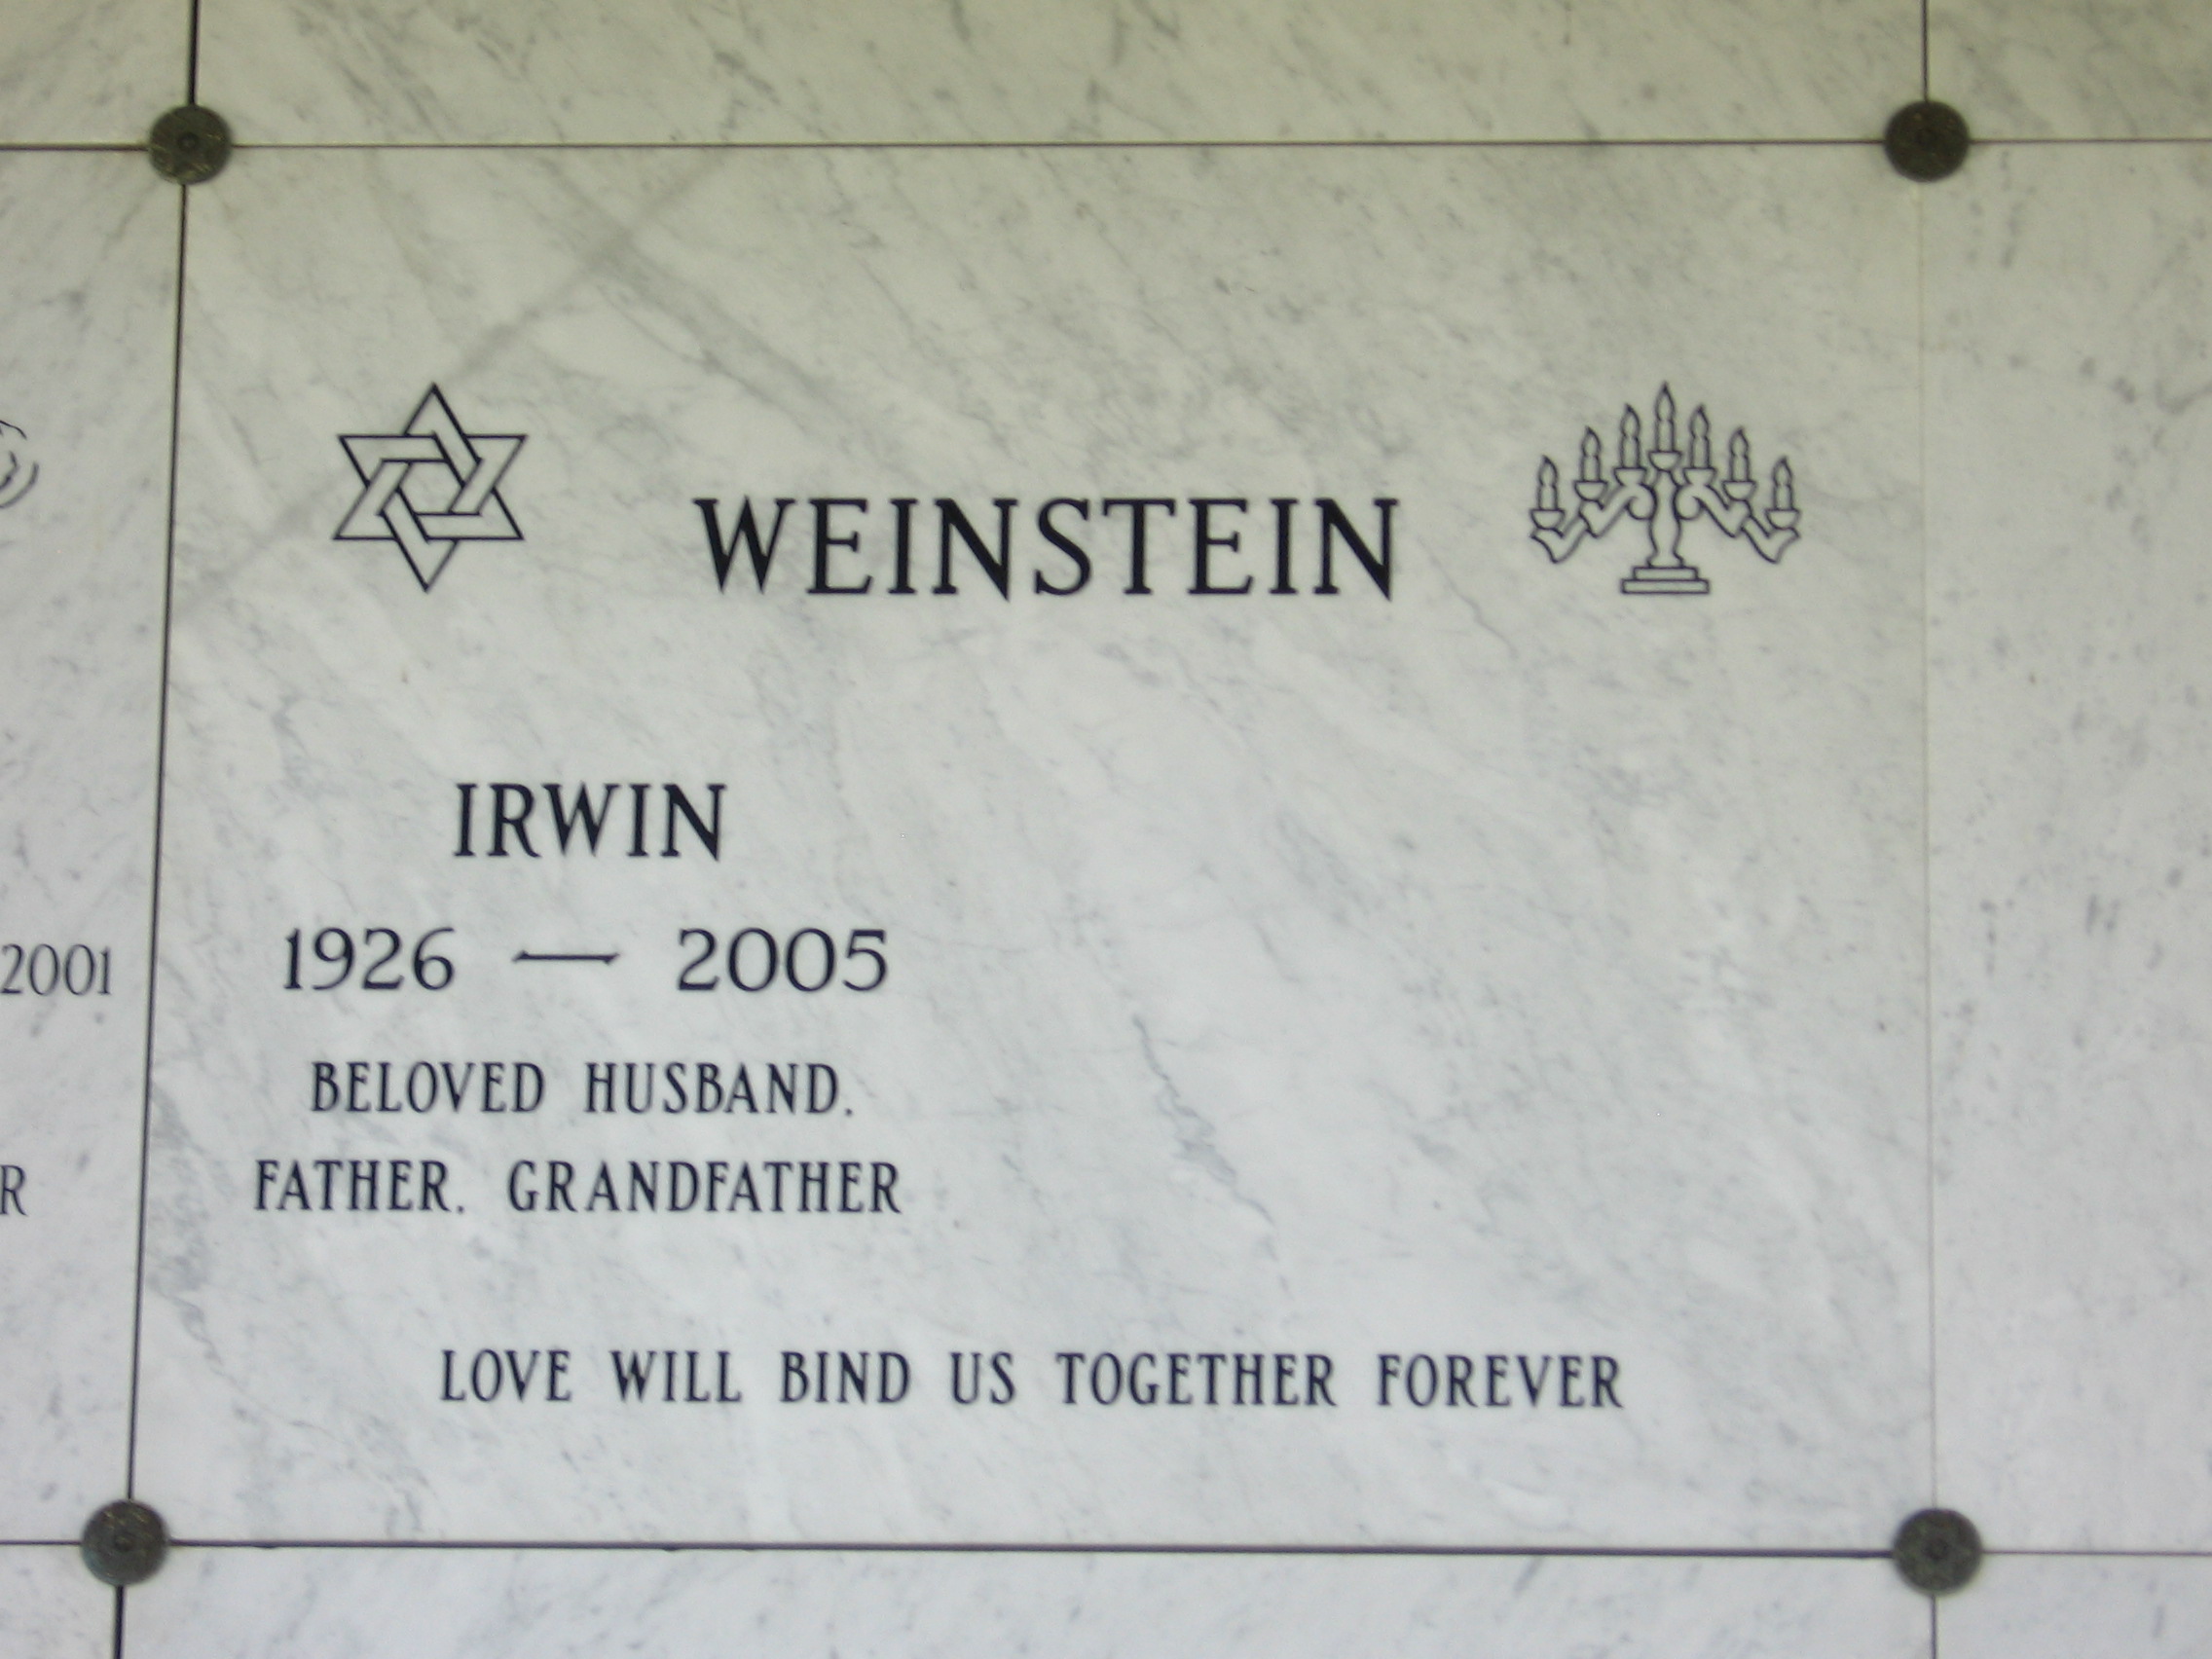 Irwin Weinstein